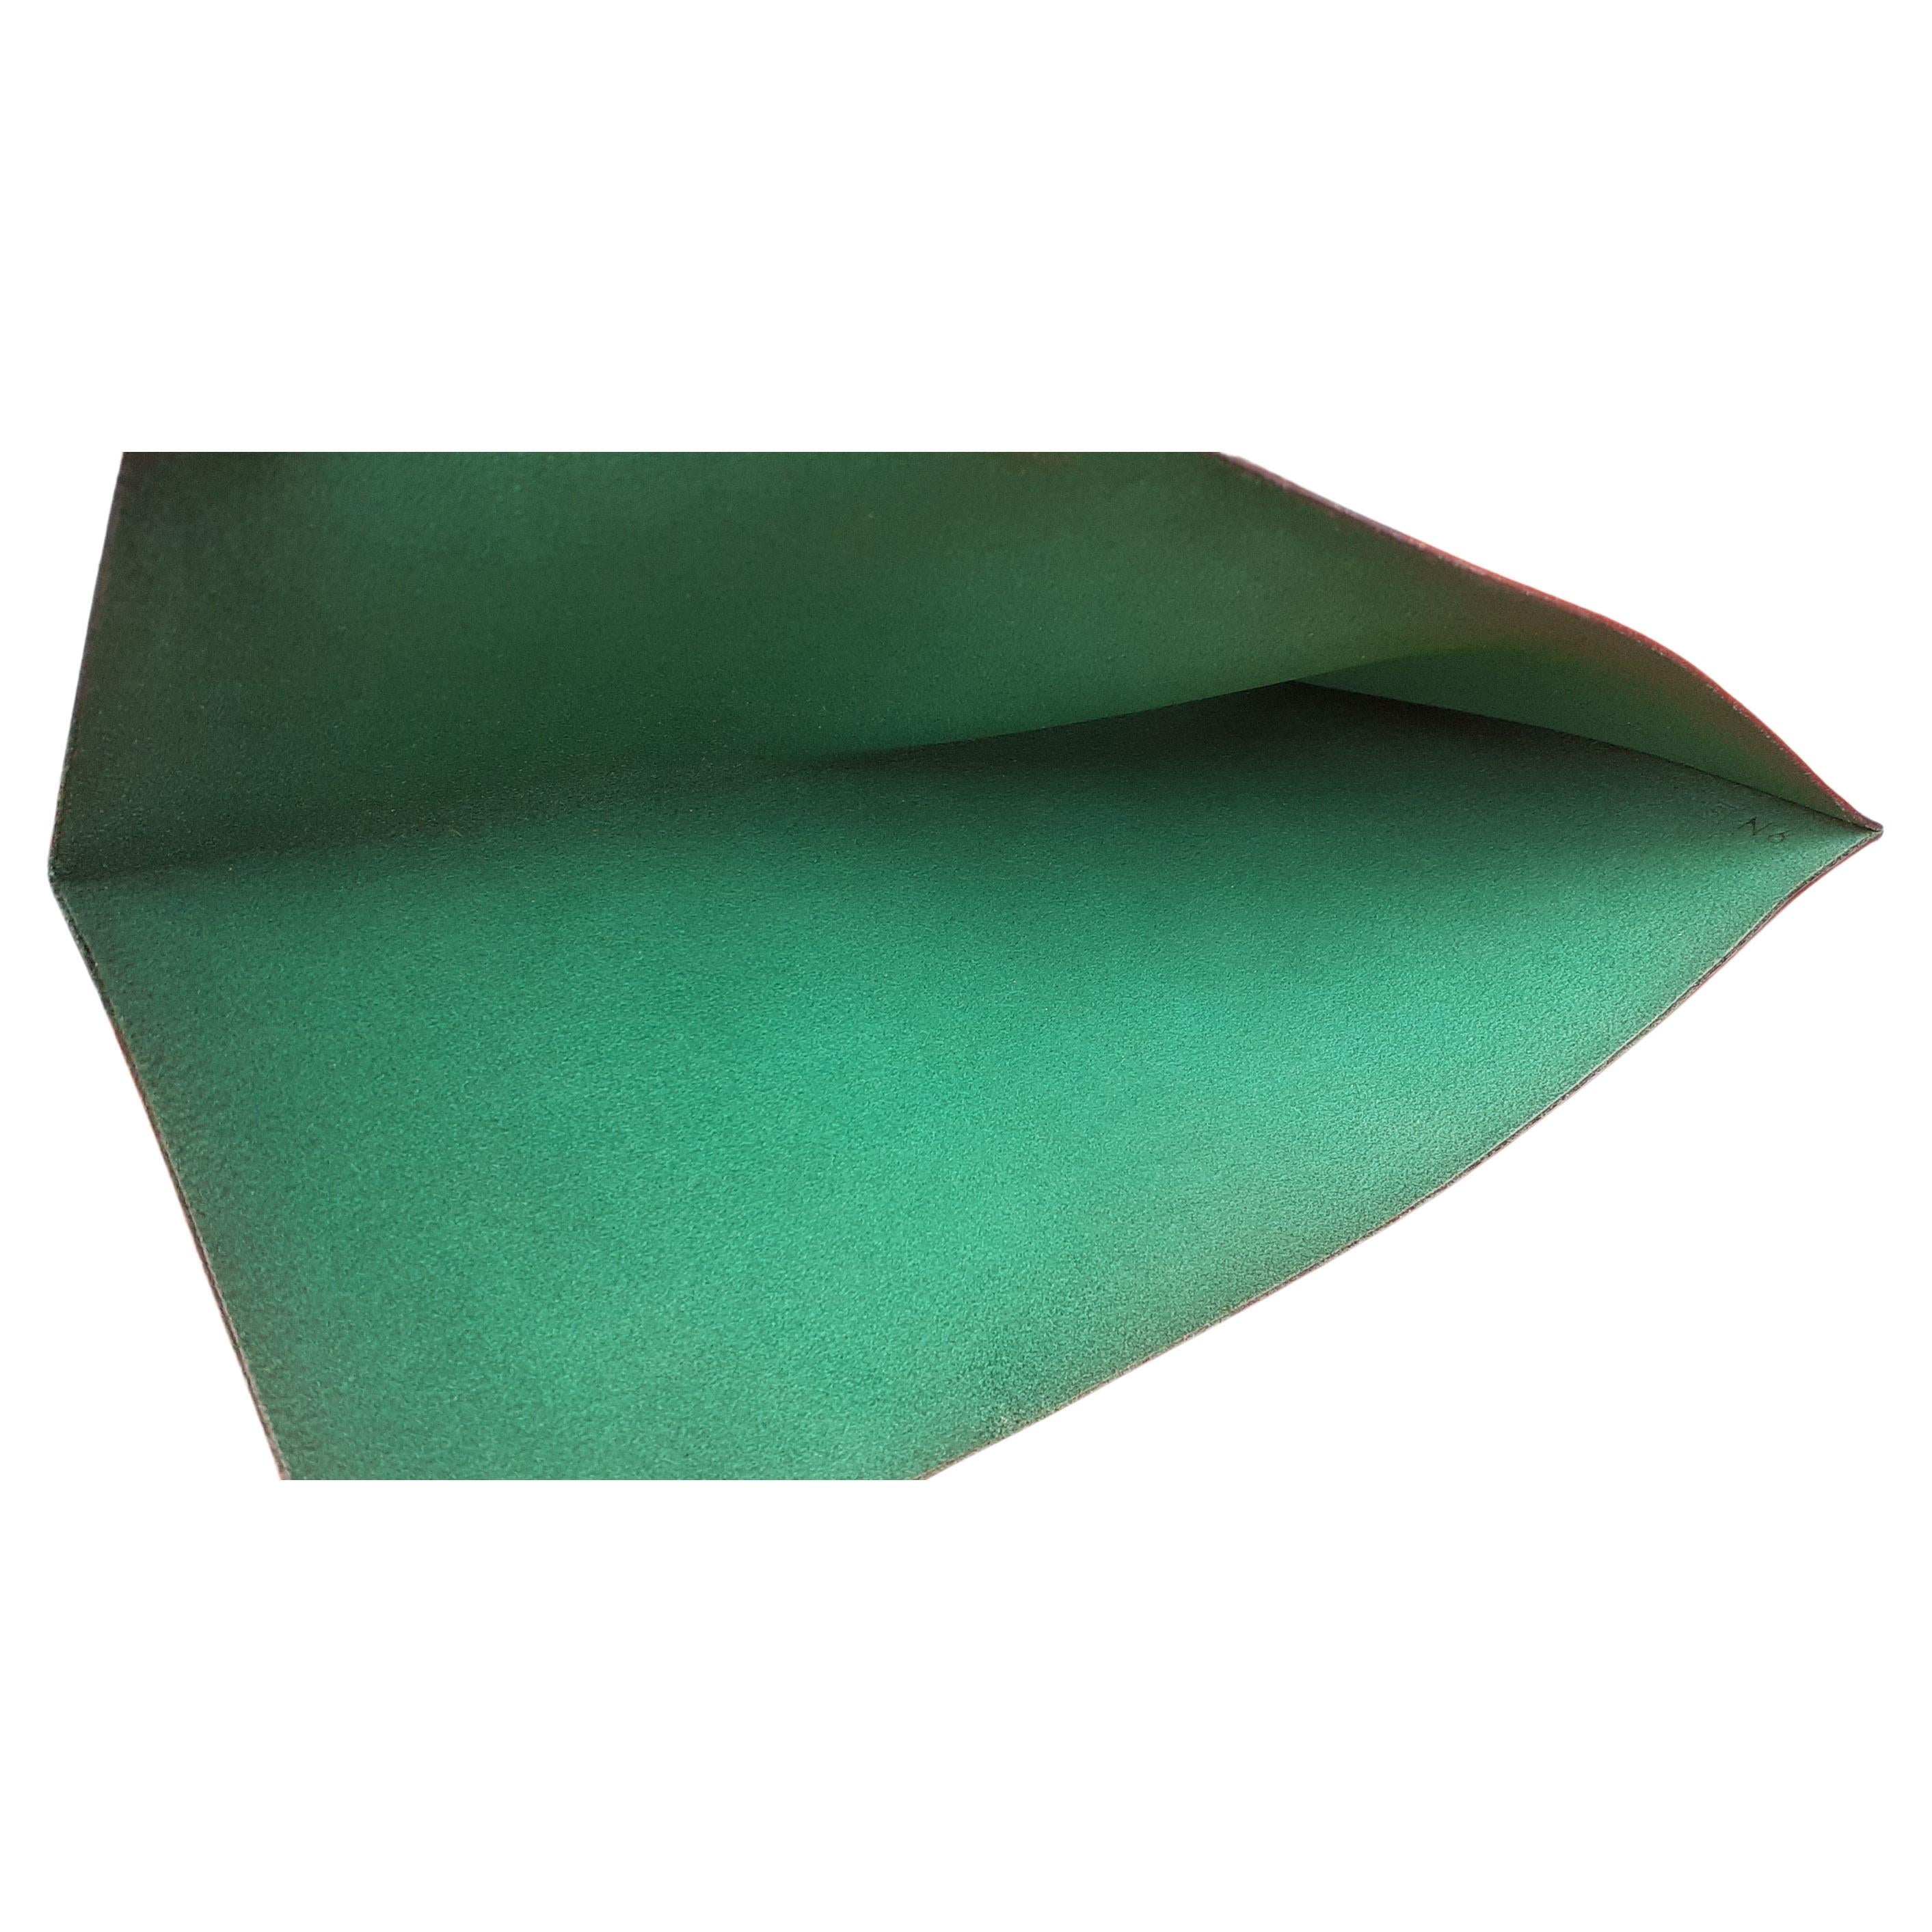 Schöne authentische Hermès Rechnung Tasche

Hergestellt in Frankreich

Stempel B im Quadrat (1998)

Gefertigt aus geschmeidigem Courchevel-Leder, innen aus Wildleder

Farbgebung: Grün

